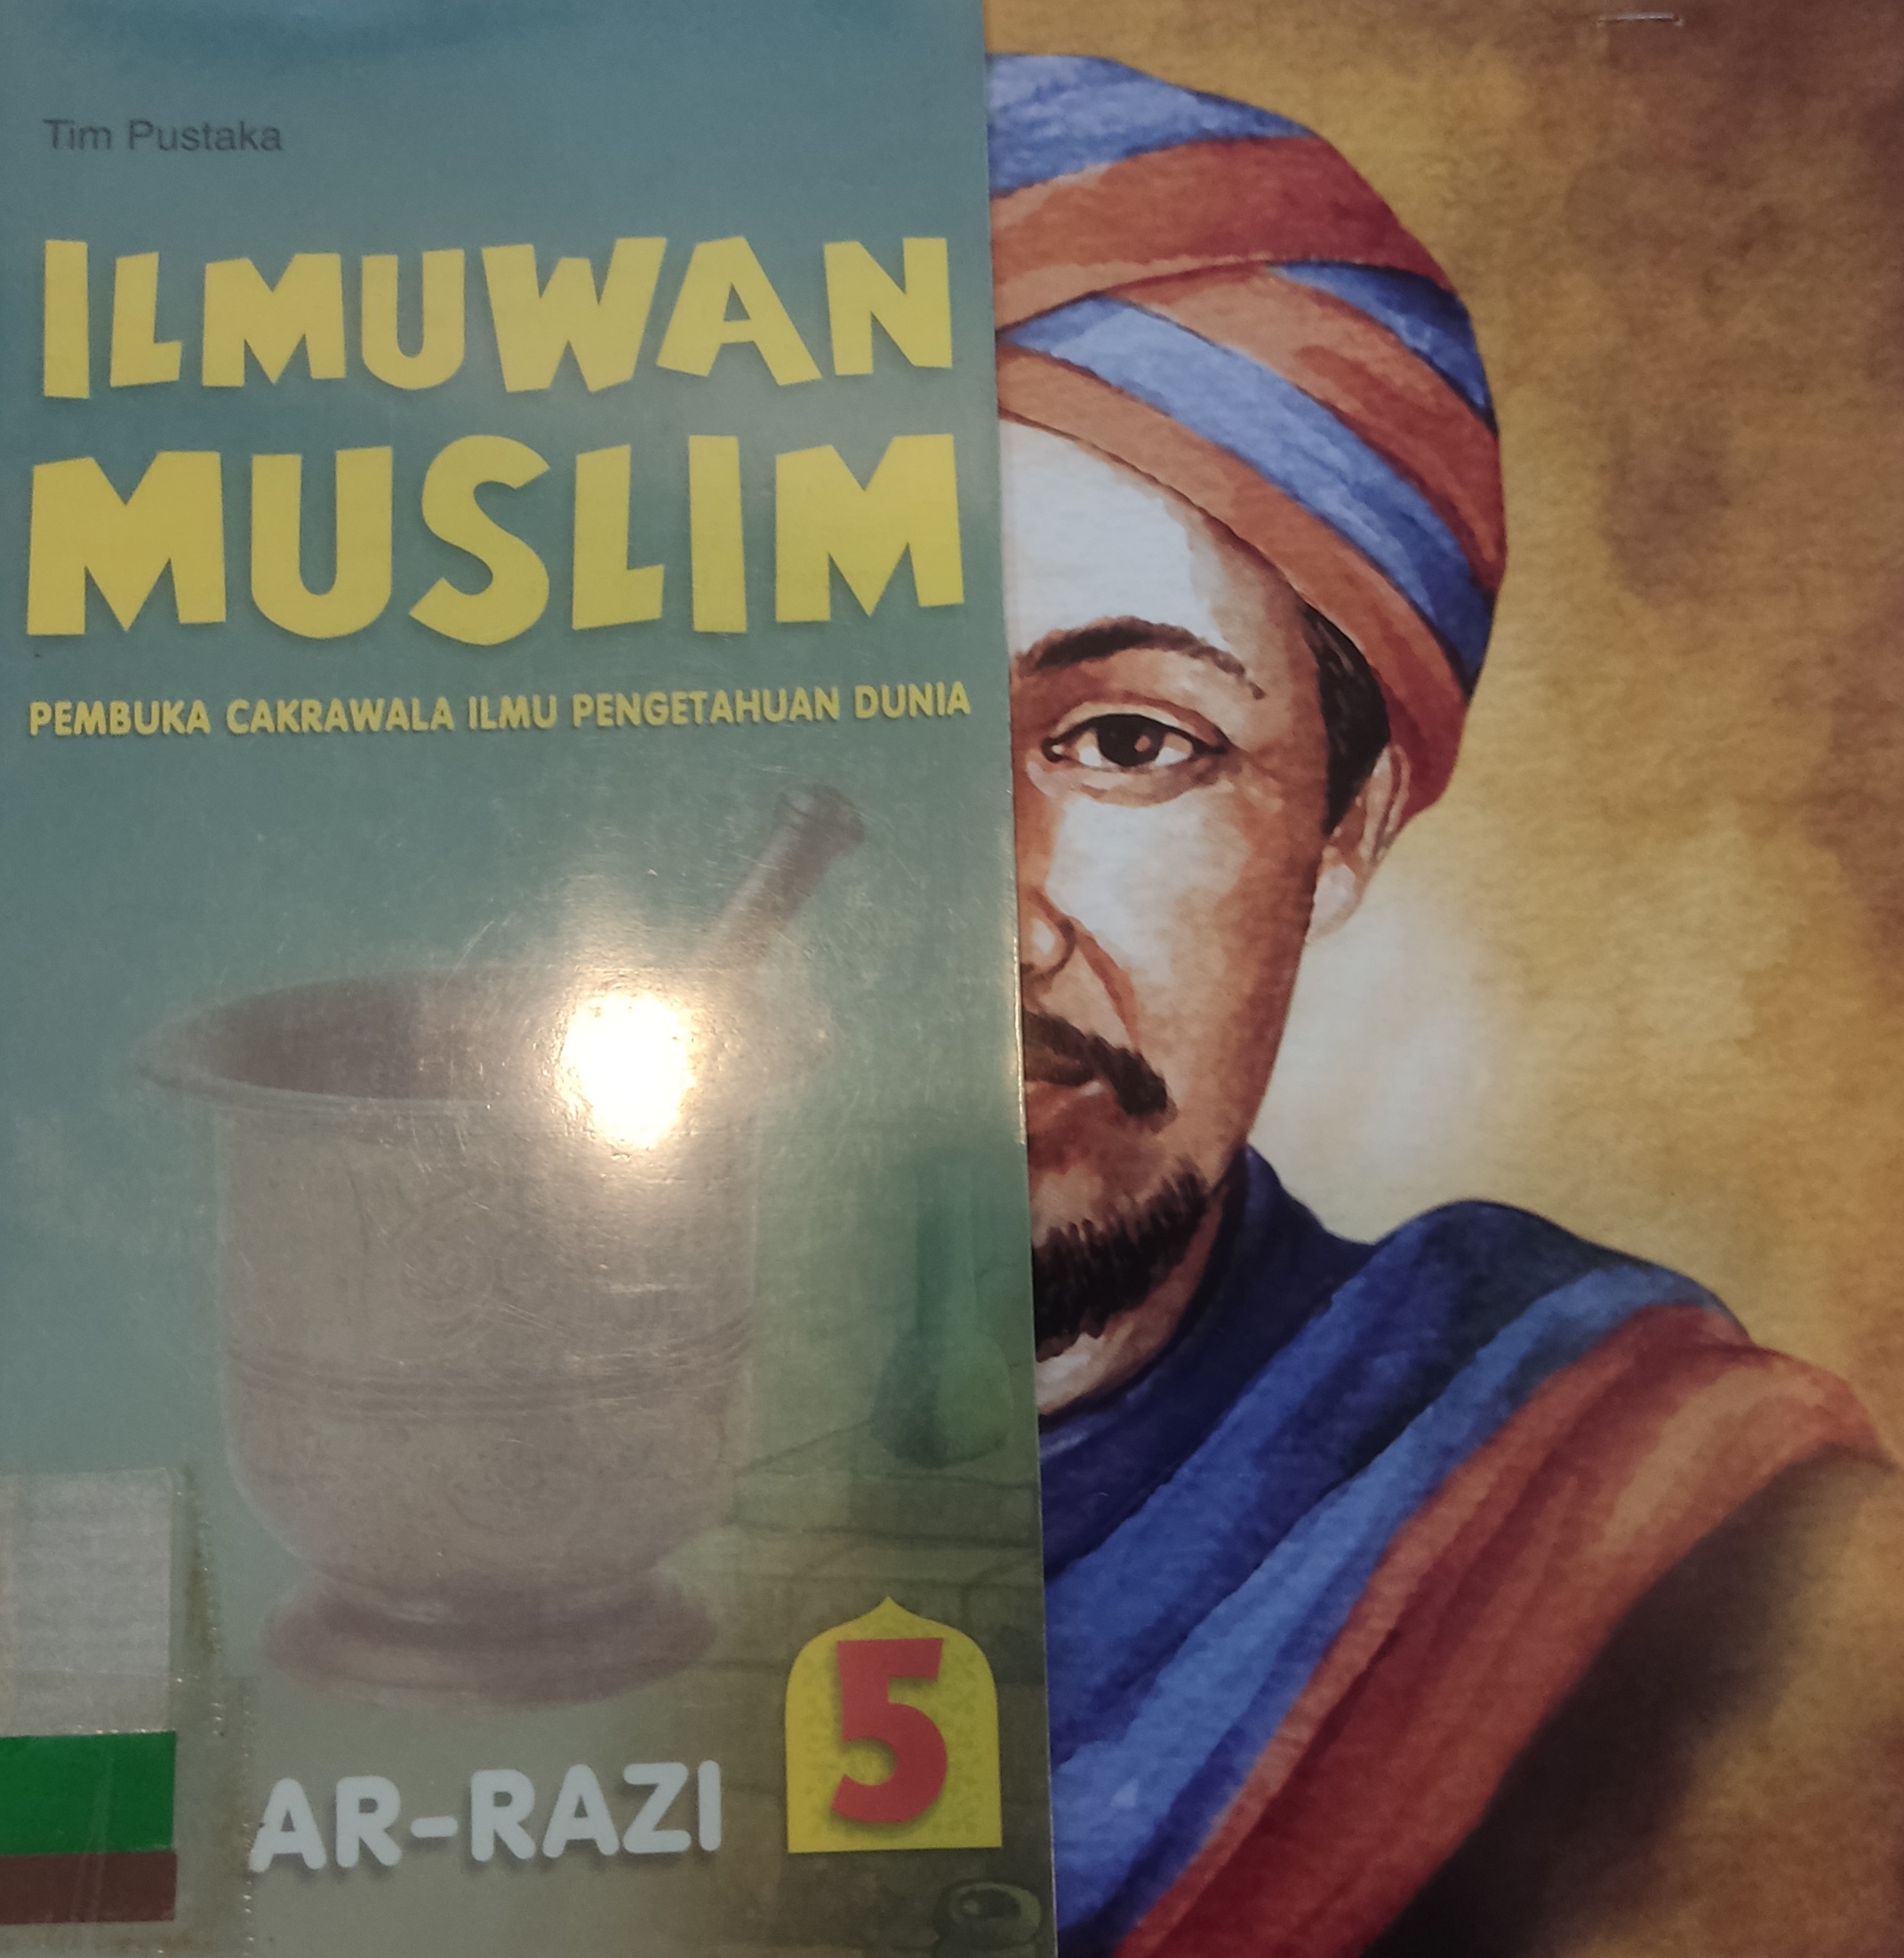 Ilmuwan Muslim : AR-RAZI :  Pembuka Cakrawala Ilmu Pengetahuan Dunia Jilid 5